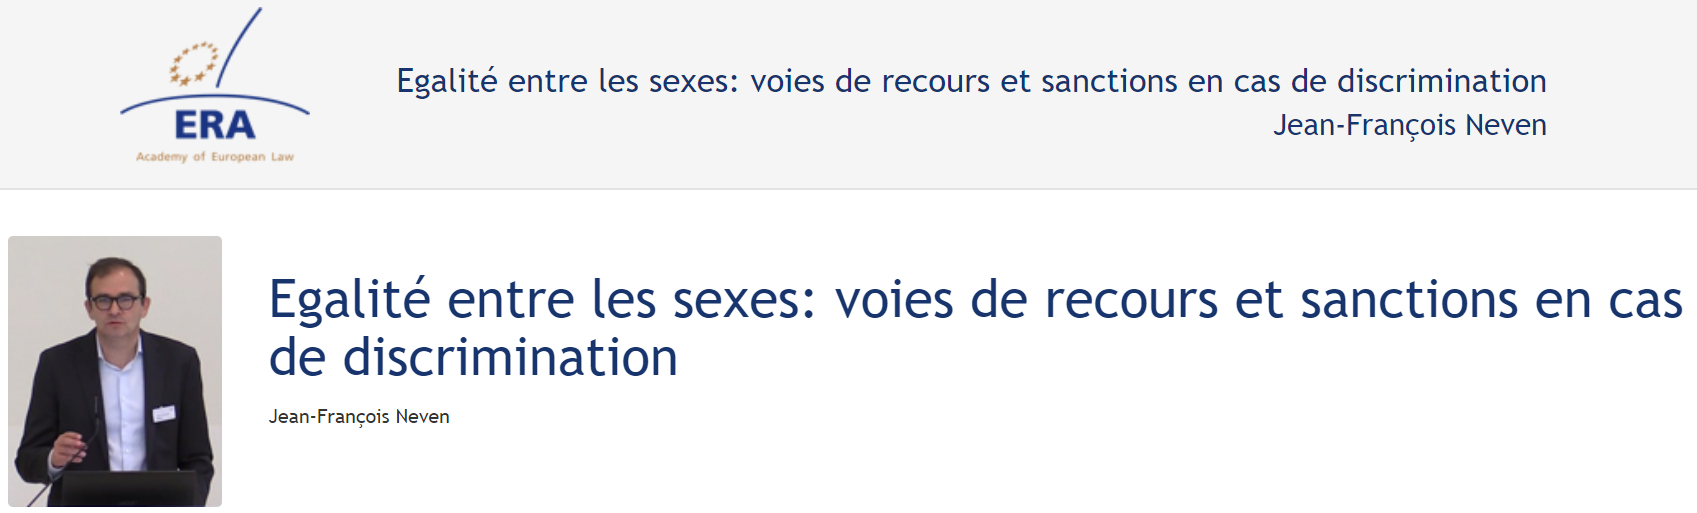 Jean-François Neven (November 2018): Egalité entre les sexes: voies de recours et sanctions en cas de discrimination